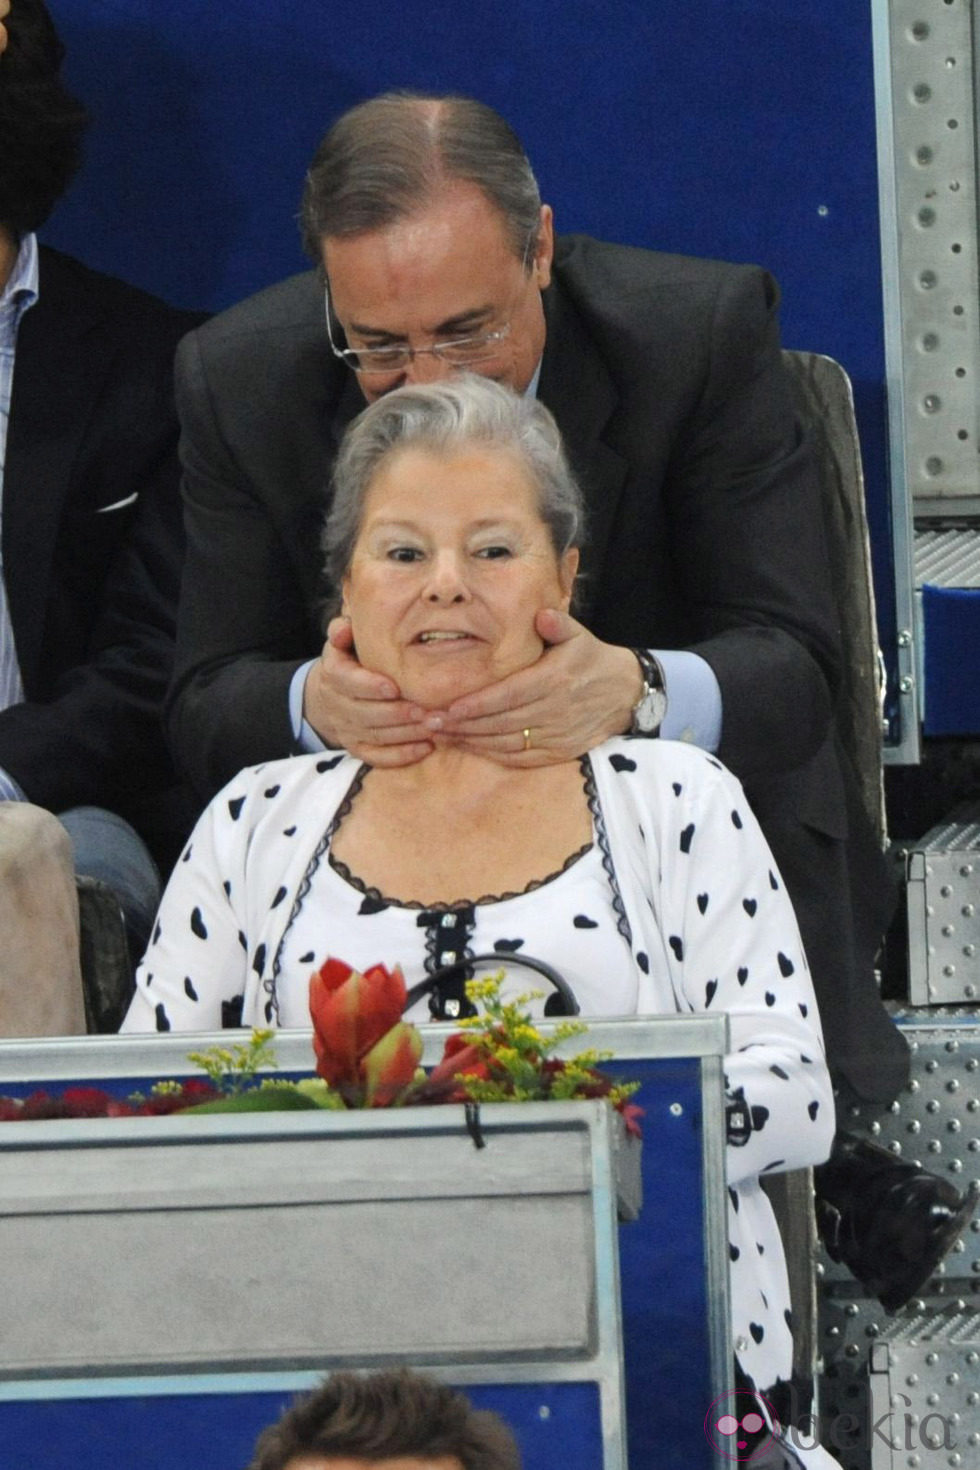 Florentino Pérez con su mujer, Pitina, en el Masters de Tenis de Madrid 2012